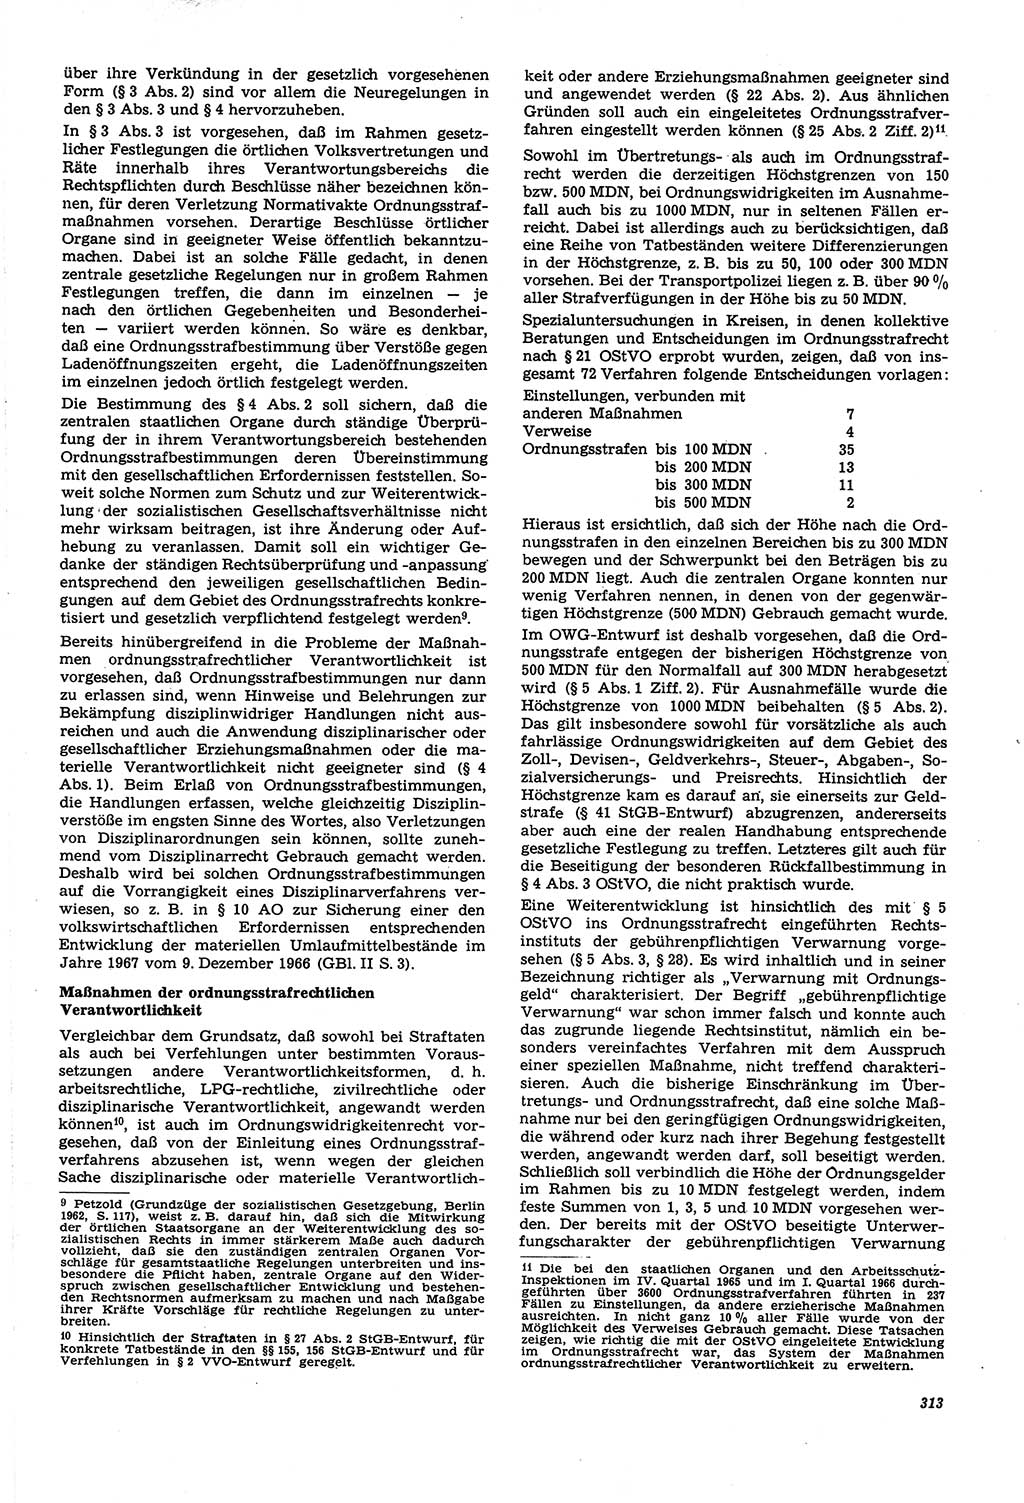 Neue Justiz (NJ), Zeitschrift für Recht und Rechtswissenschaft [Deutsche Demokratische Republik (DDR)], 21. Jahrgang 1967, Seite 313 (NJ DDR 1967, S. 313)